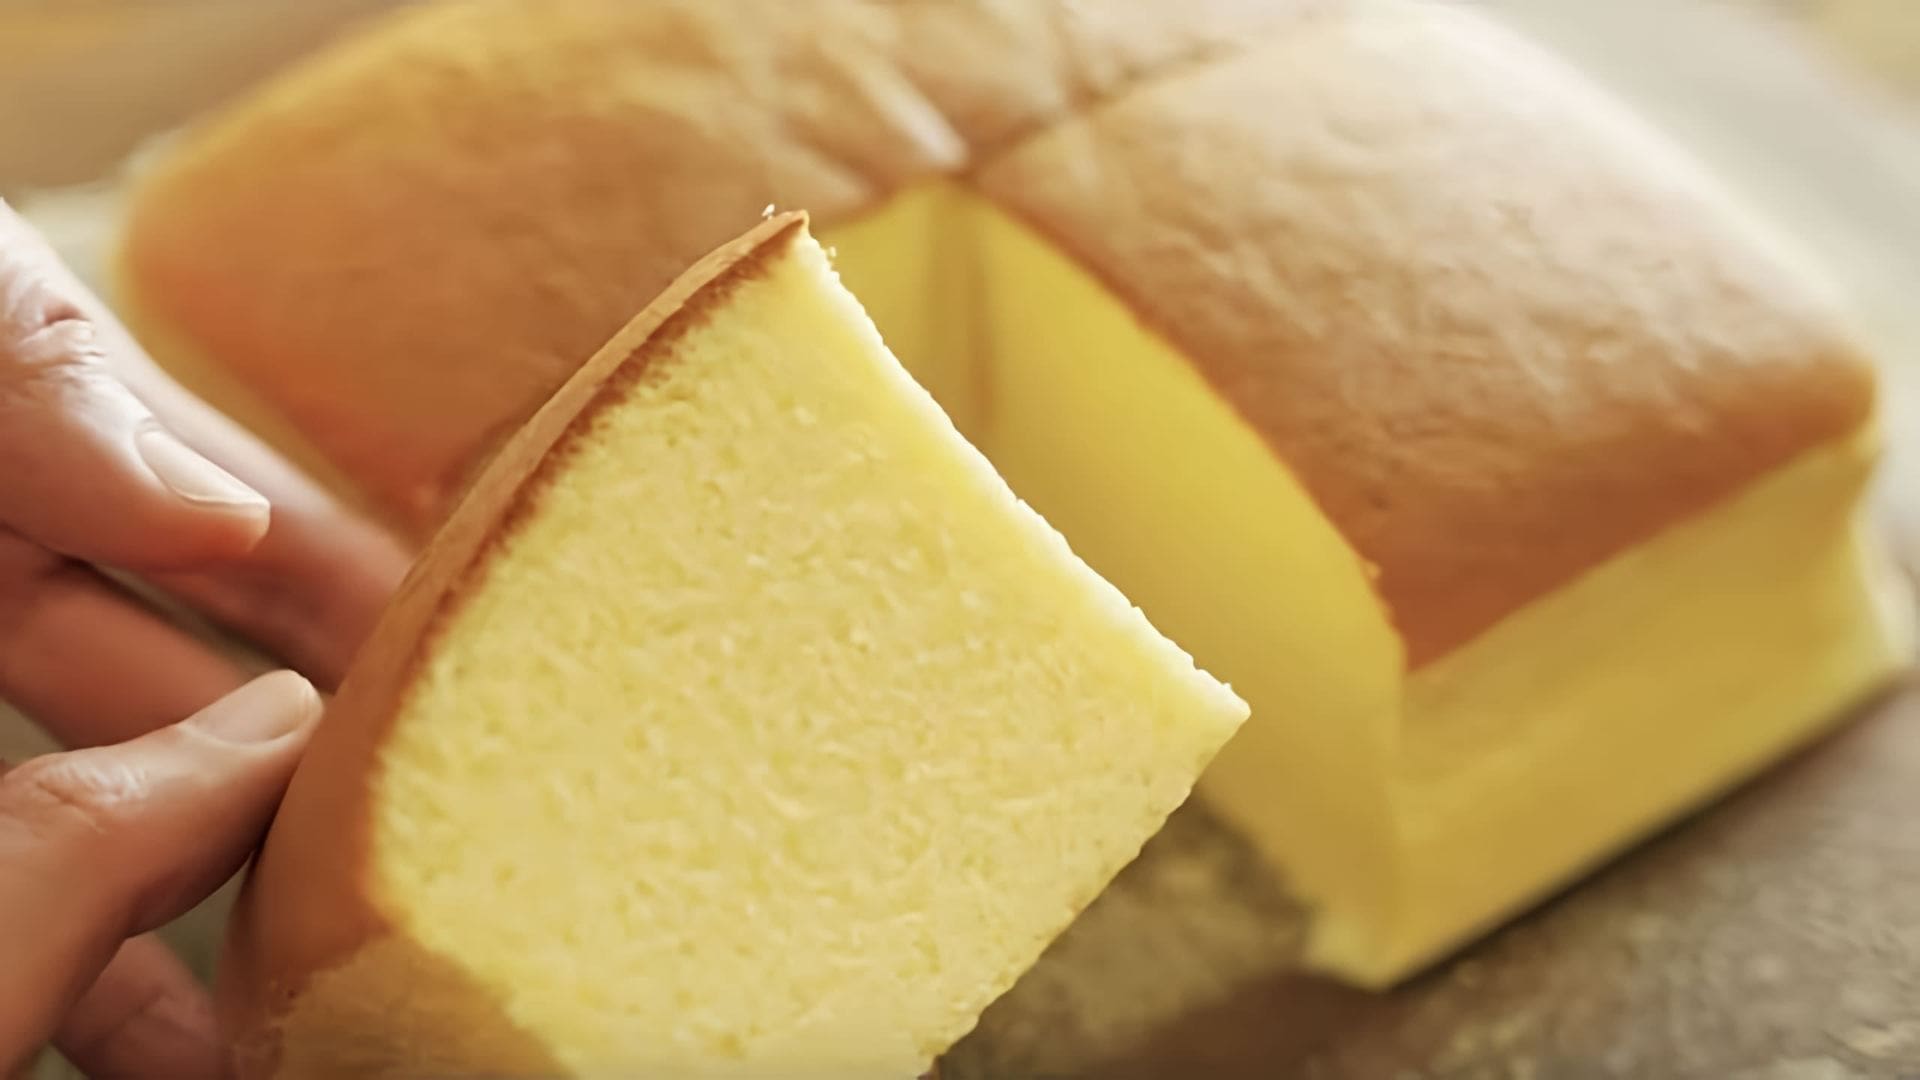 В этом видео демонстрируется рецепт приготовления тайванского торта Кастелла